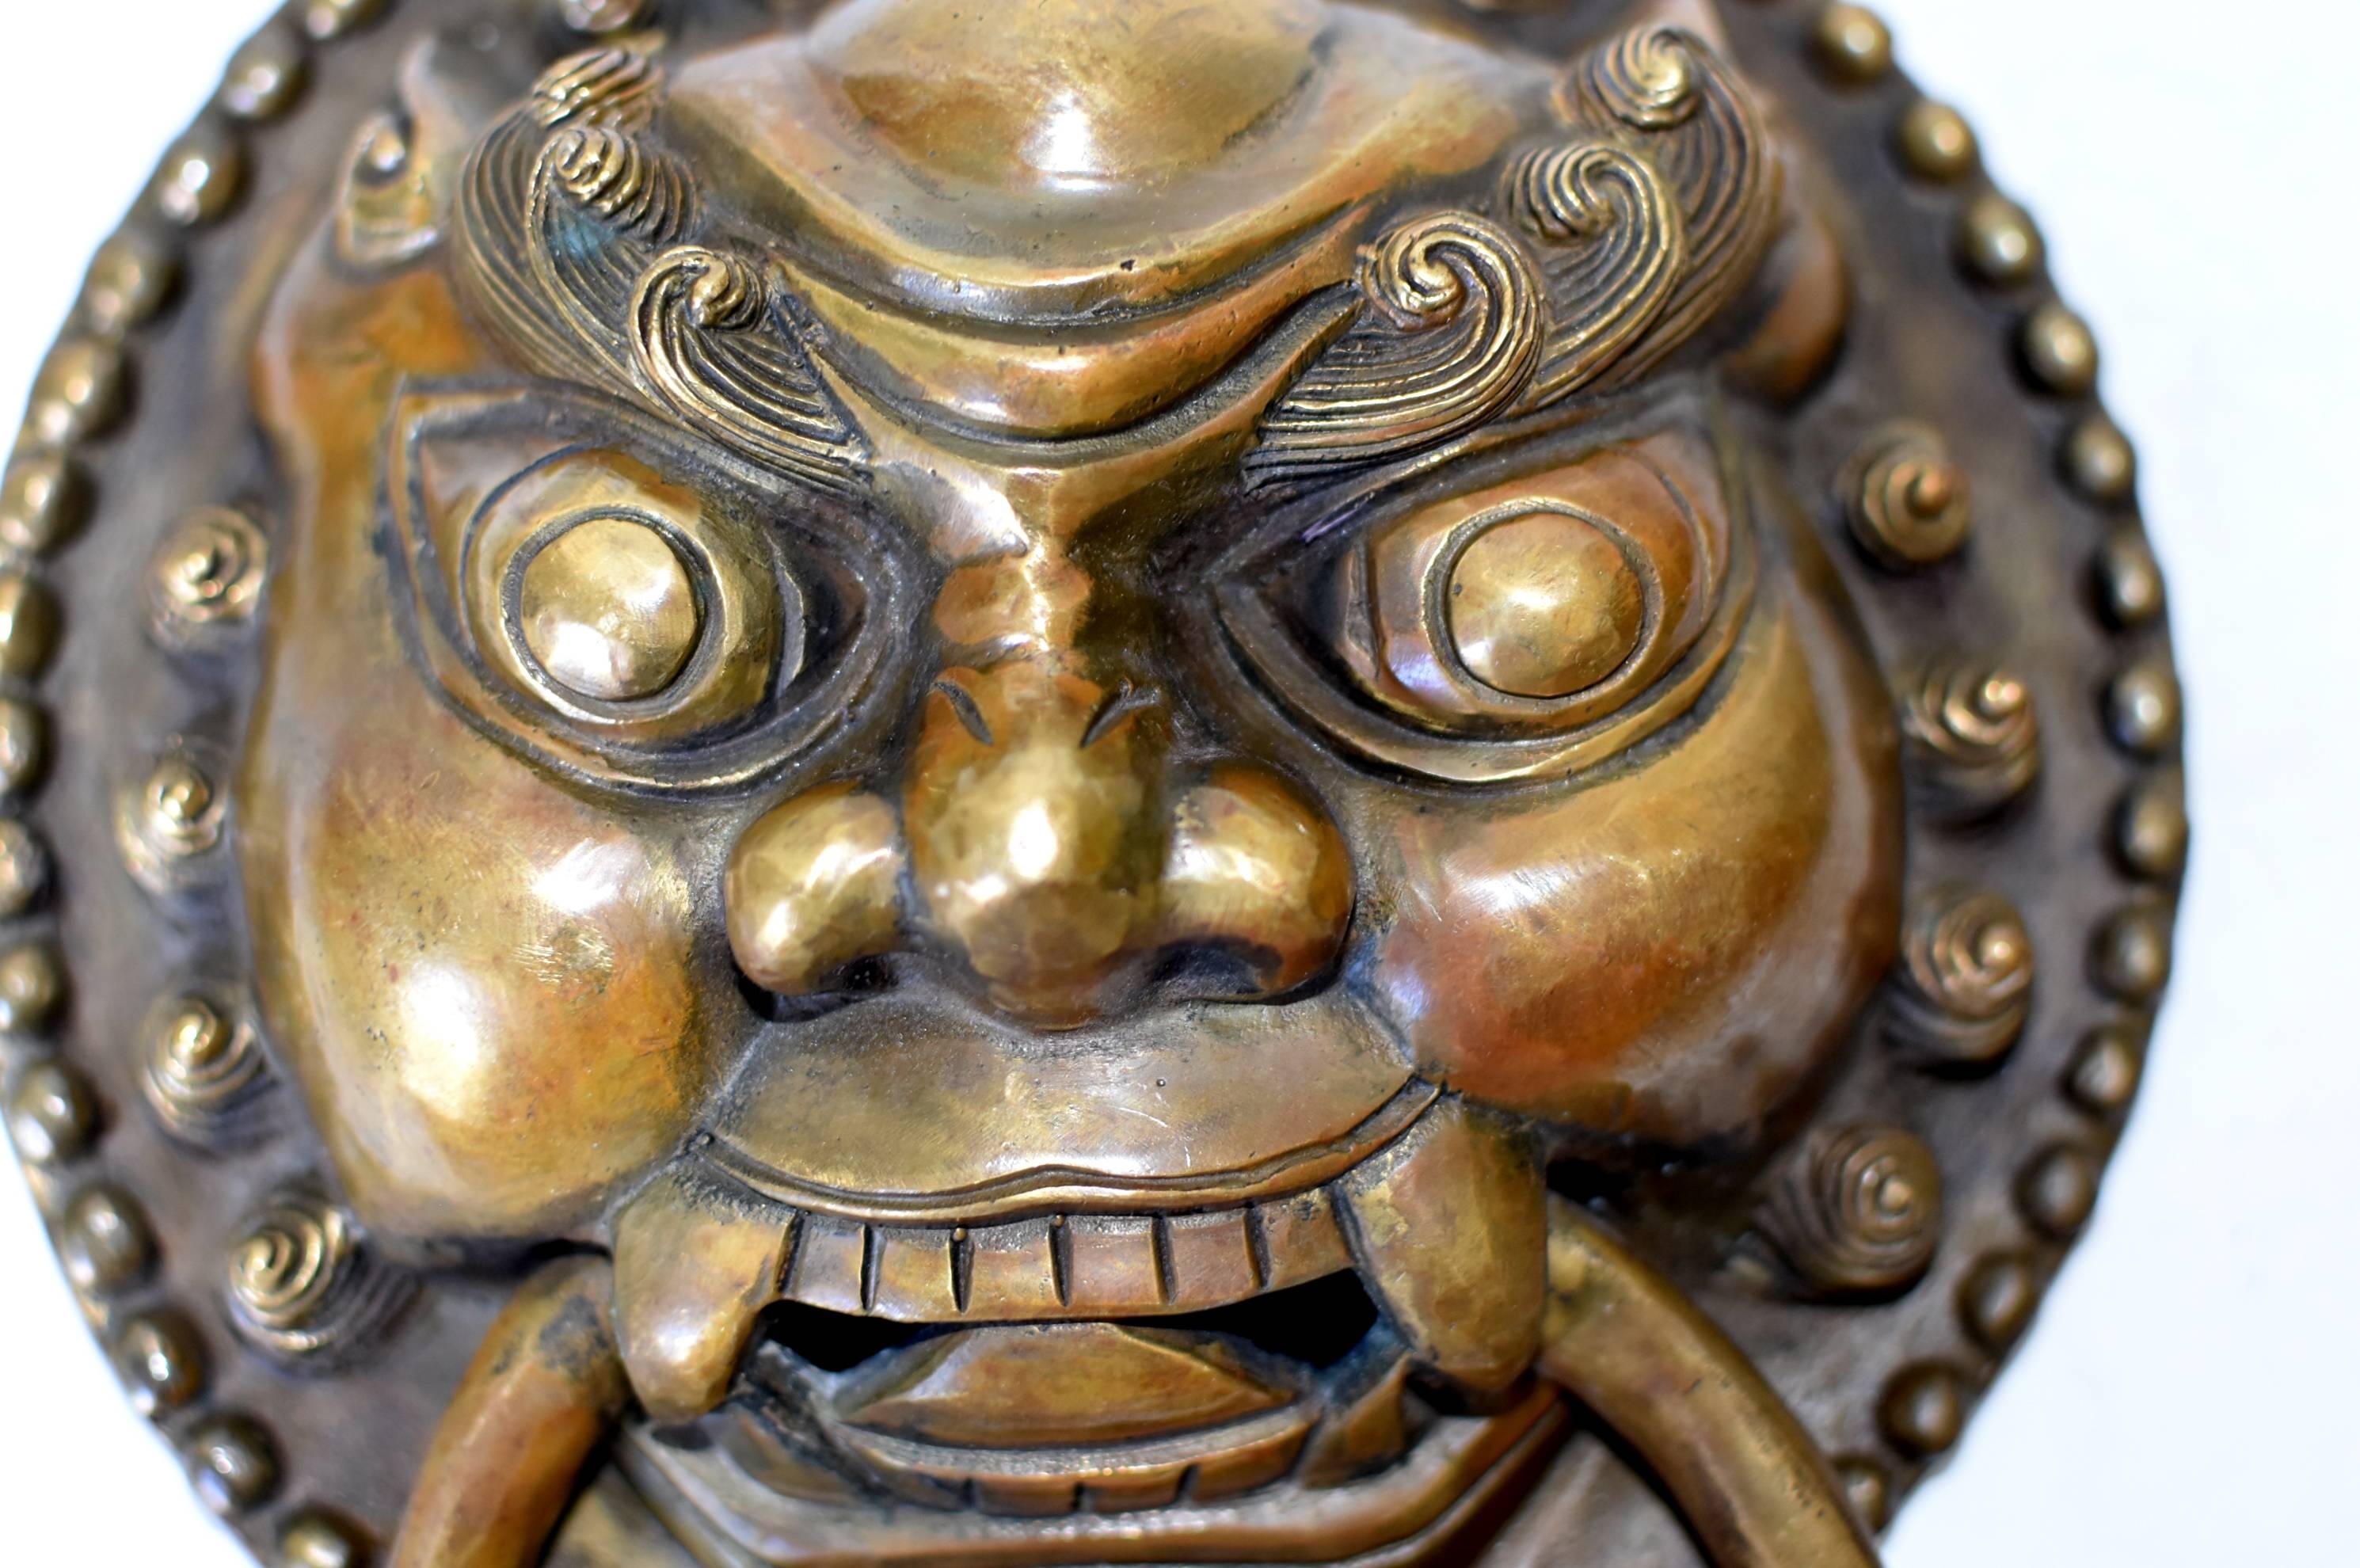 Une paire de magnifiques heurtoirs en bronze à motif de gardien. Le gardien mythique a de grands yeux globuleux au-dessus d'une bouche grande ouverte. Des sourcils forts et bouclés sous un front proéminent. Ses joues rondes et lourdes indiquent